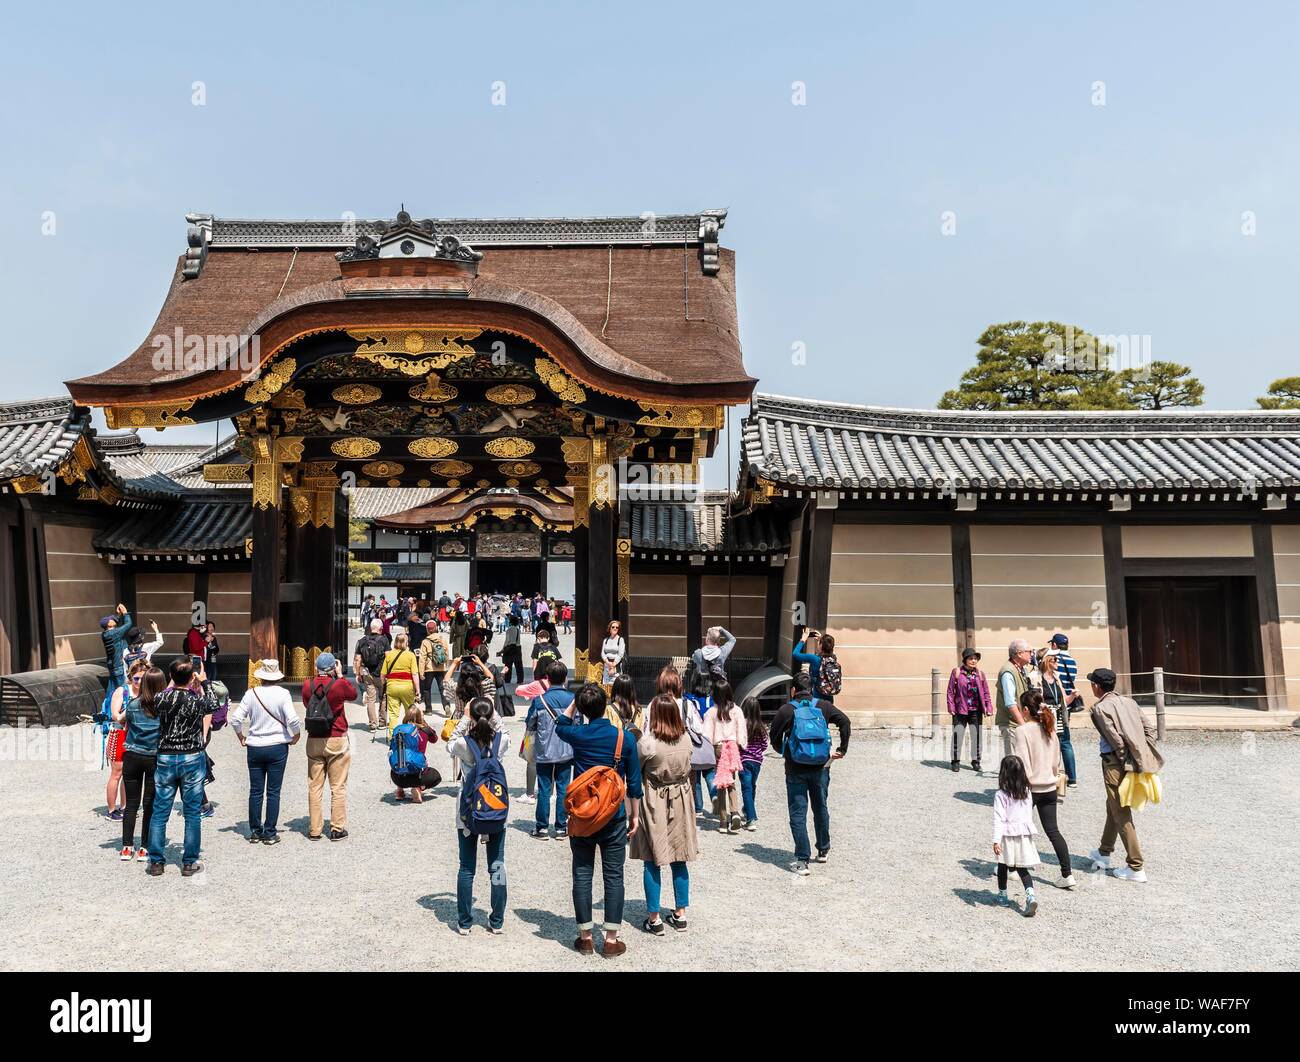 Ninomaru Gate, château de Nijo, ancien château du shogunat, Kyoto, Japon Banque D'Images